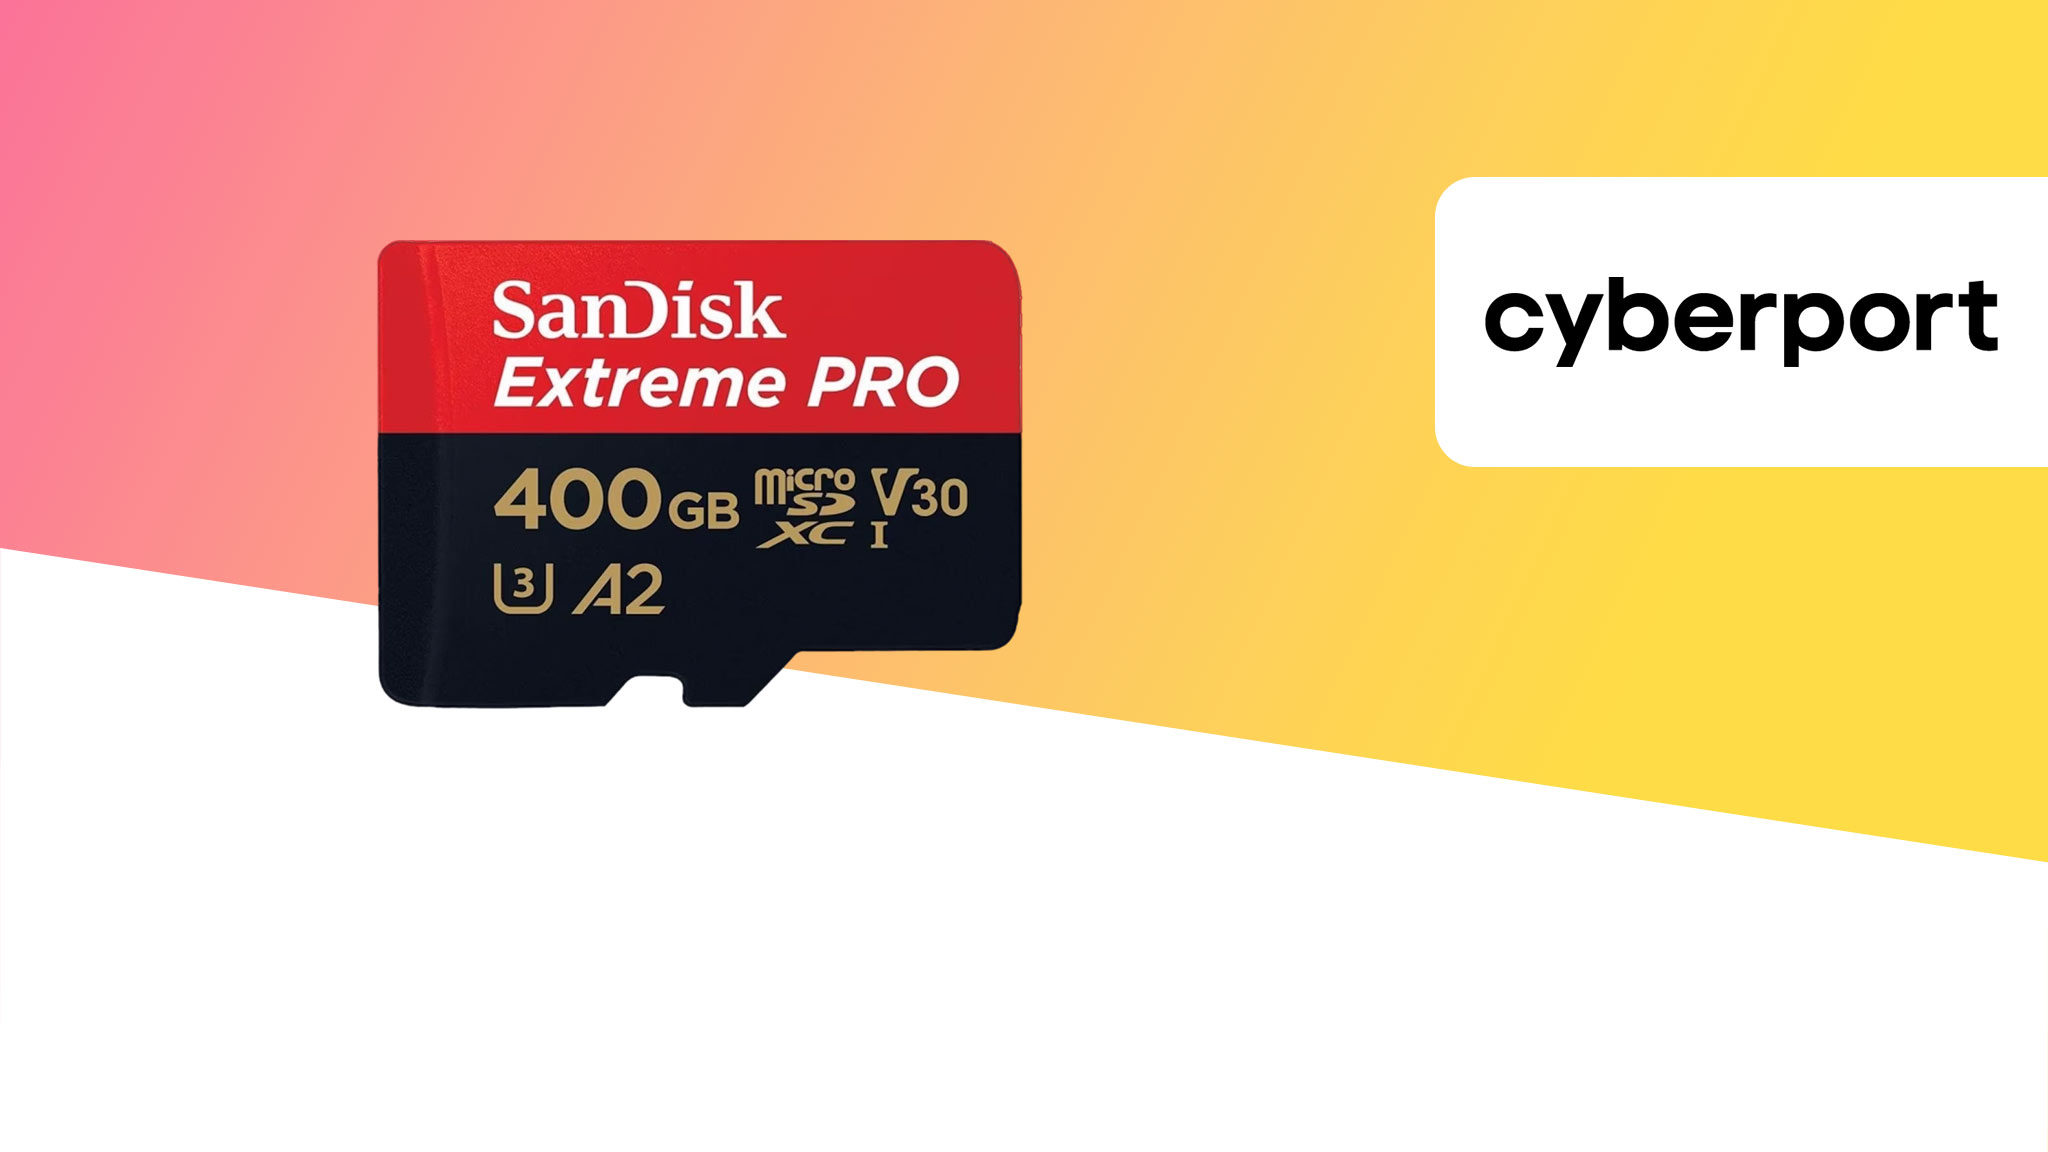 Zum Jubiläum: Große microSD-Karte mit 400 GB von SanDisk zum Sparpreis